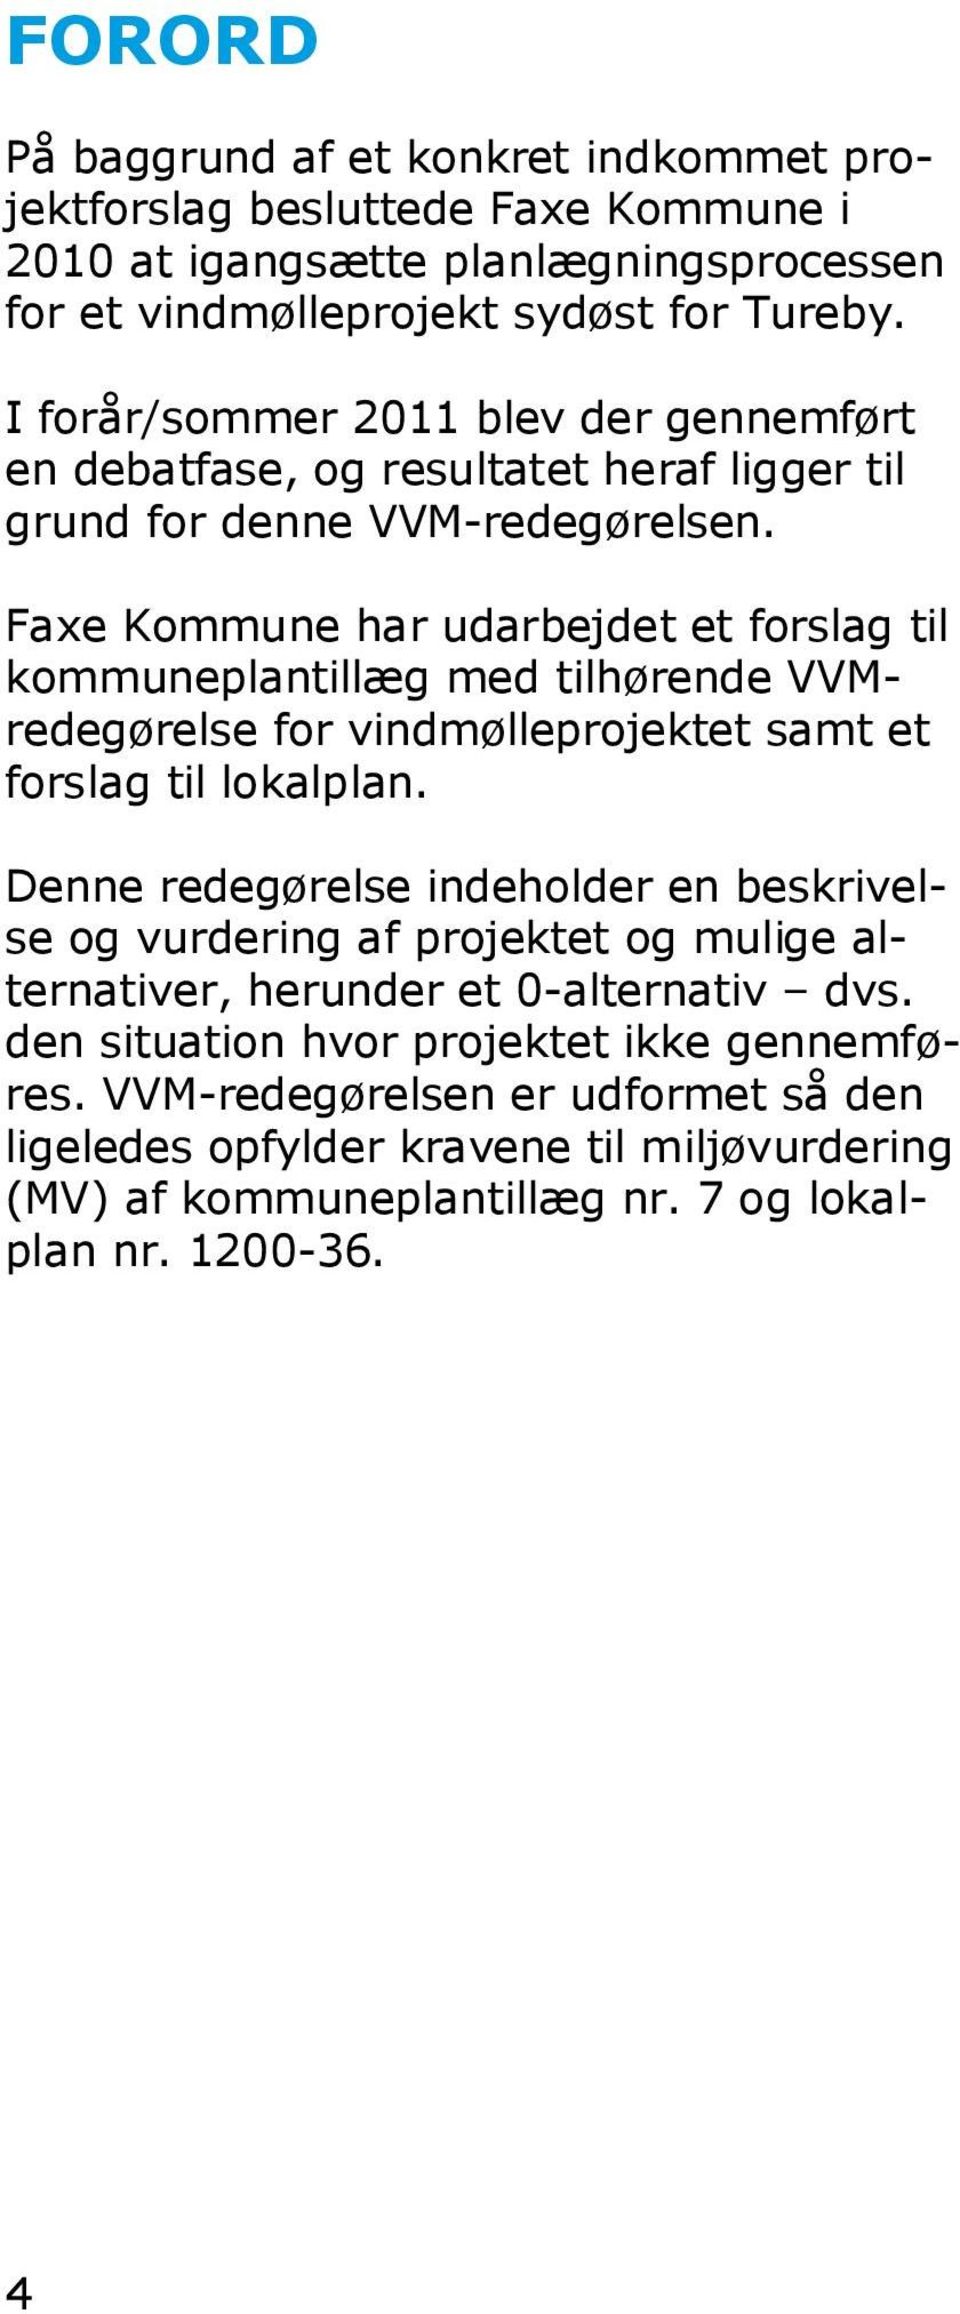 Faxe Kommune har udarbejdet et forslag til kommuneplantillæg med tilhørende VVMredegørelse for vindmølleprojektet samt et forslag til lokalplan.